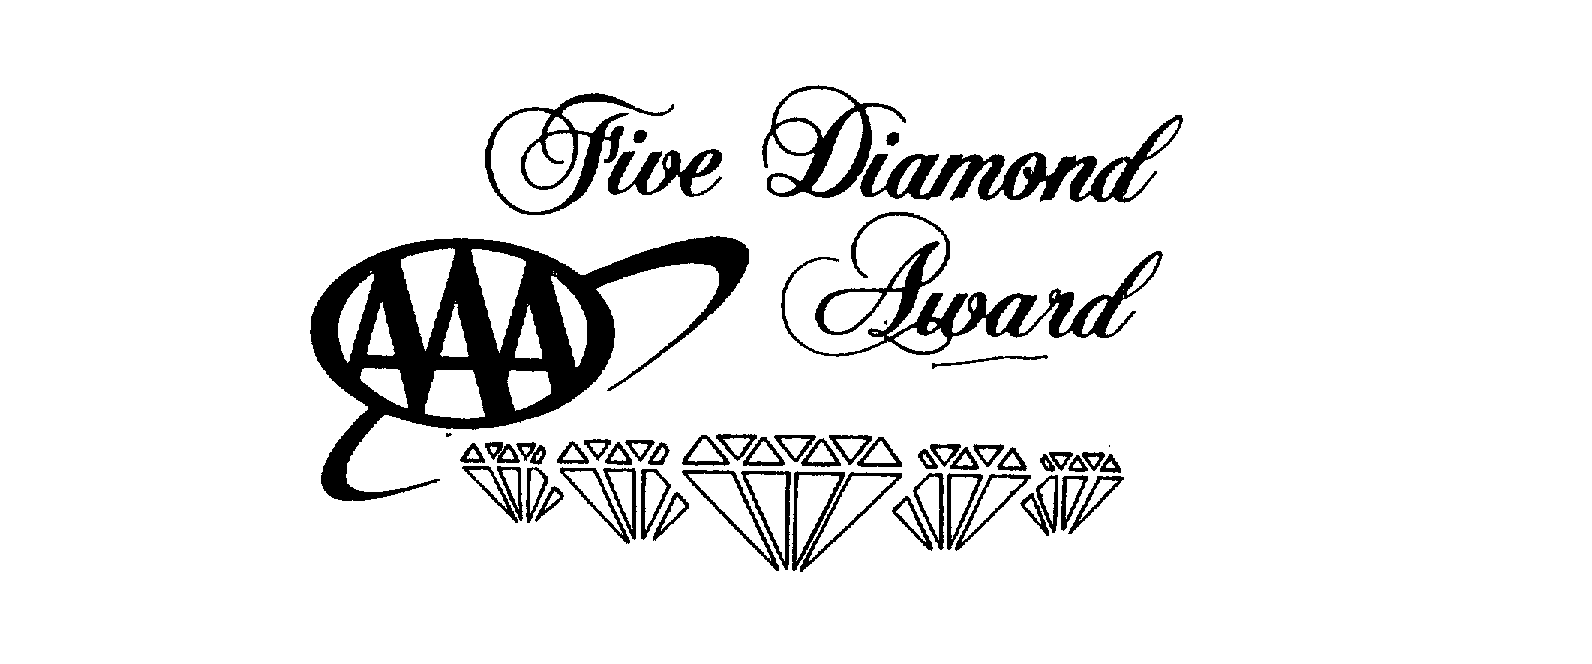  AAA FIVE DIAMOND AWARD